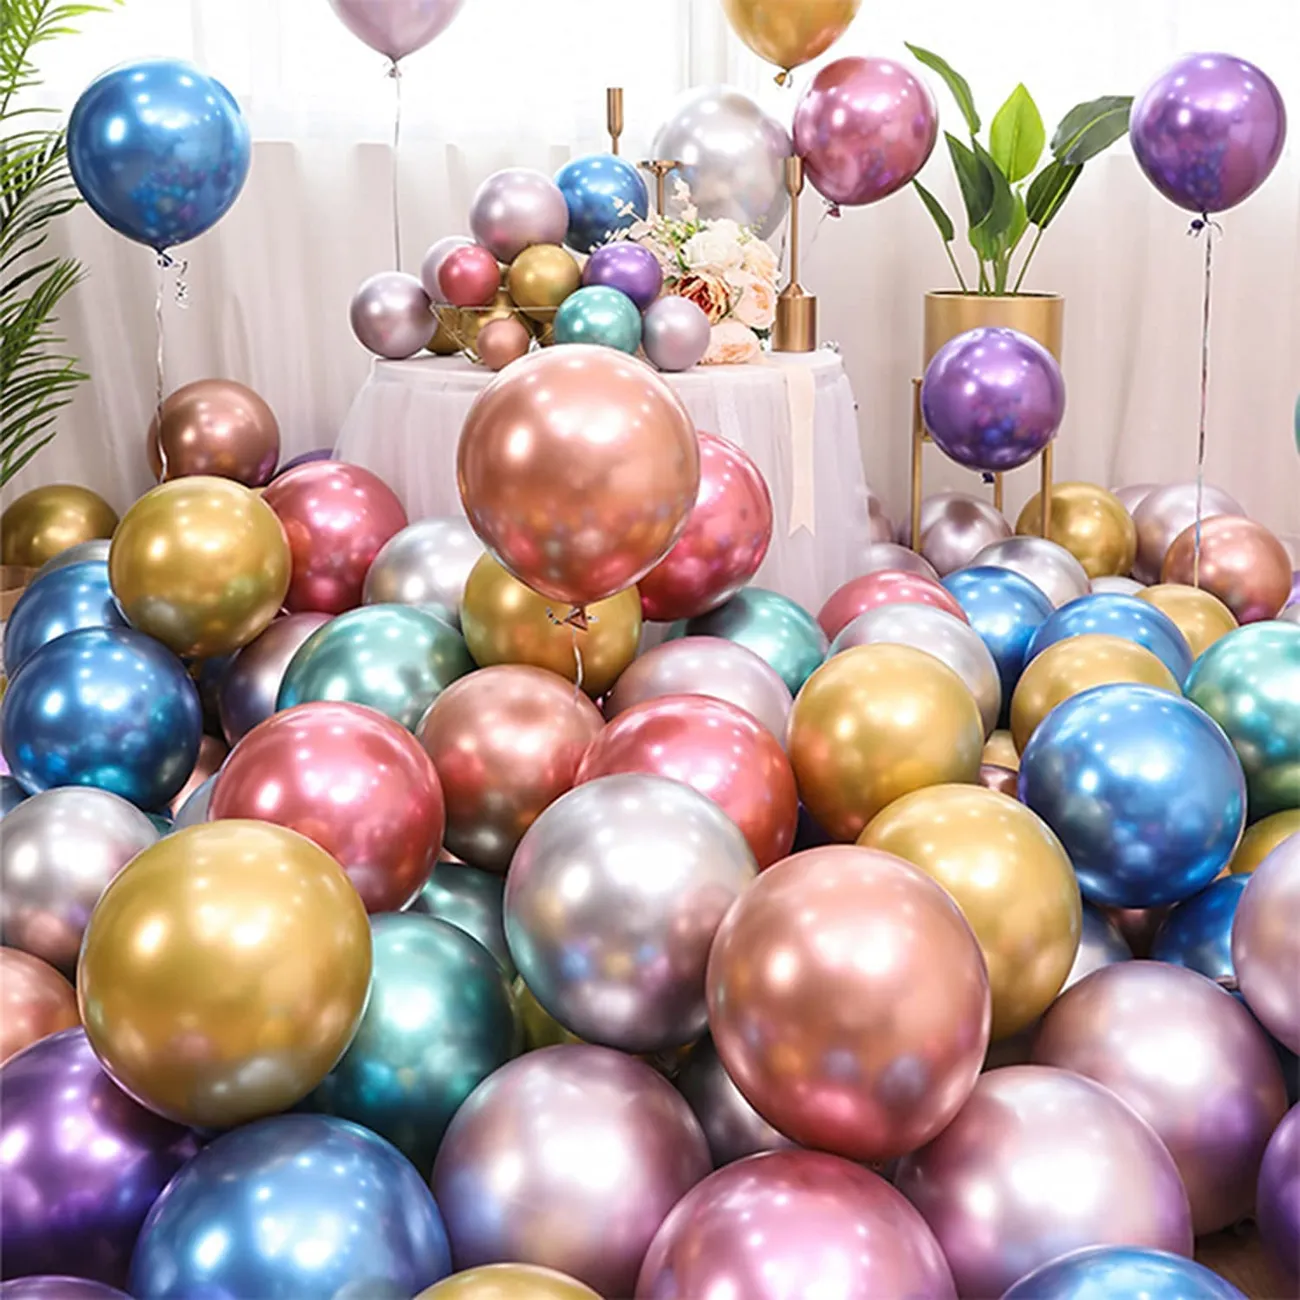 10 قطعة بالونات معدنية من الكروم لأعياد الميلاد والزفاف وموسم التخرج متعدد الألوان big image 1